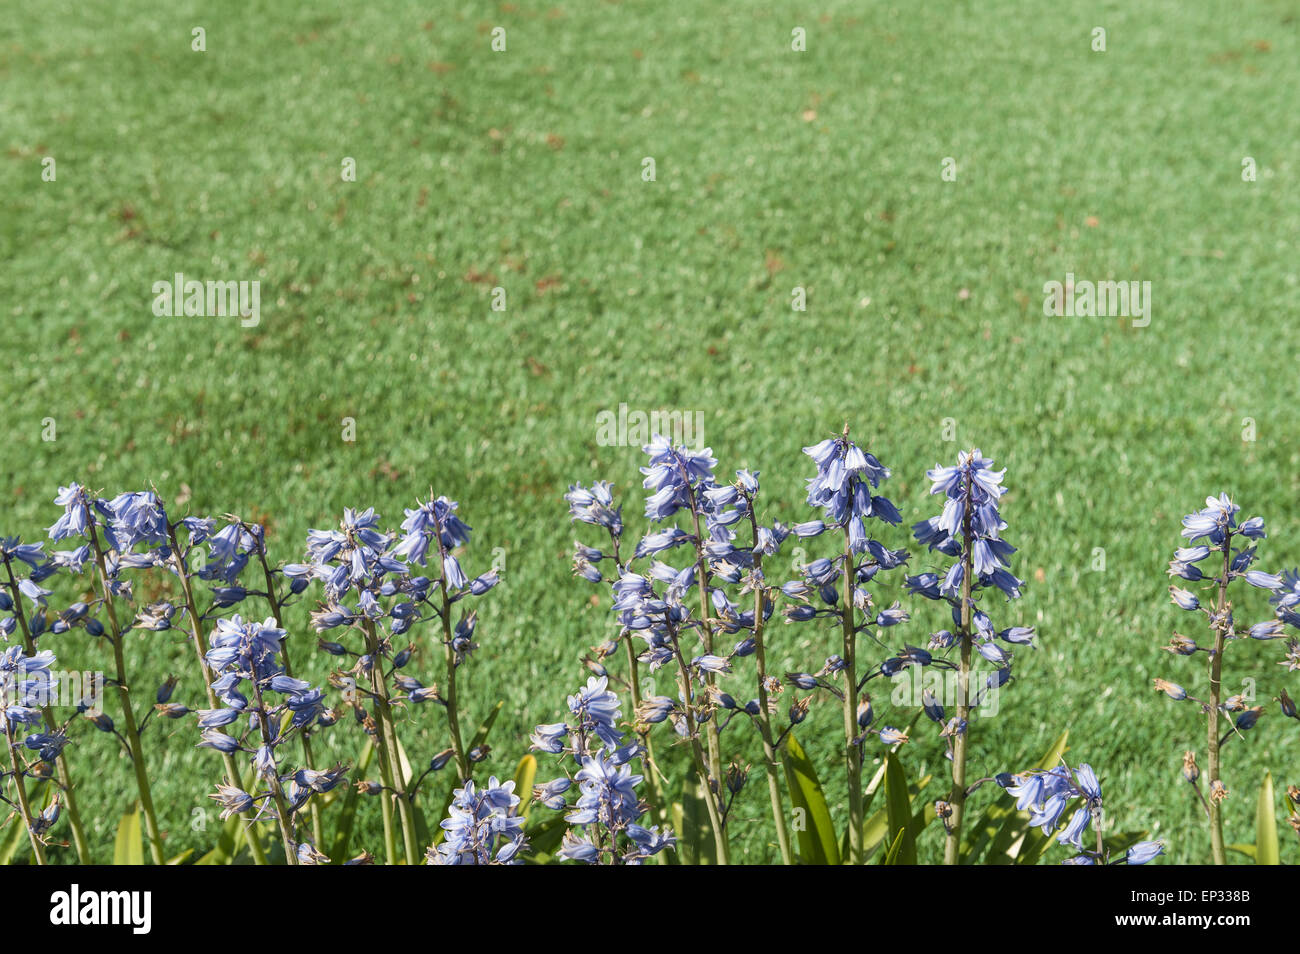 Geringer Wartungsaufwand, die Mischung in einen Kunststoff Rasen neben Terrasse und Blume Grenze kein Mähen oder schneiden den Rasen durchaus realistisch Stockfoto